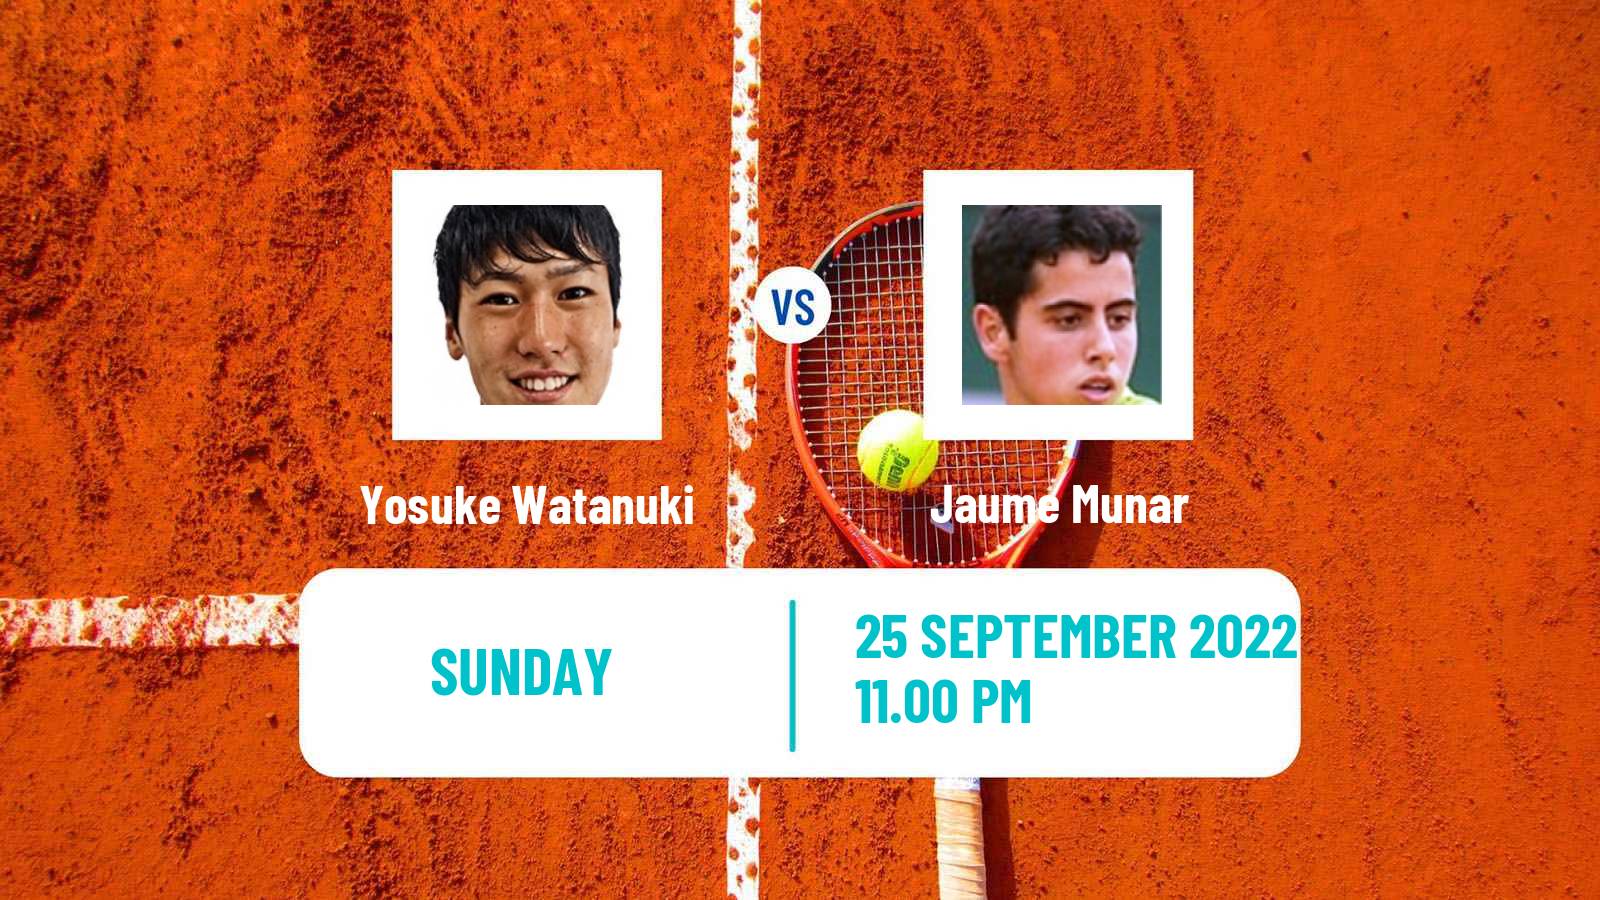 Tennis ATP Seoul Yosuke Watanuki - Jaume Munar